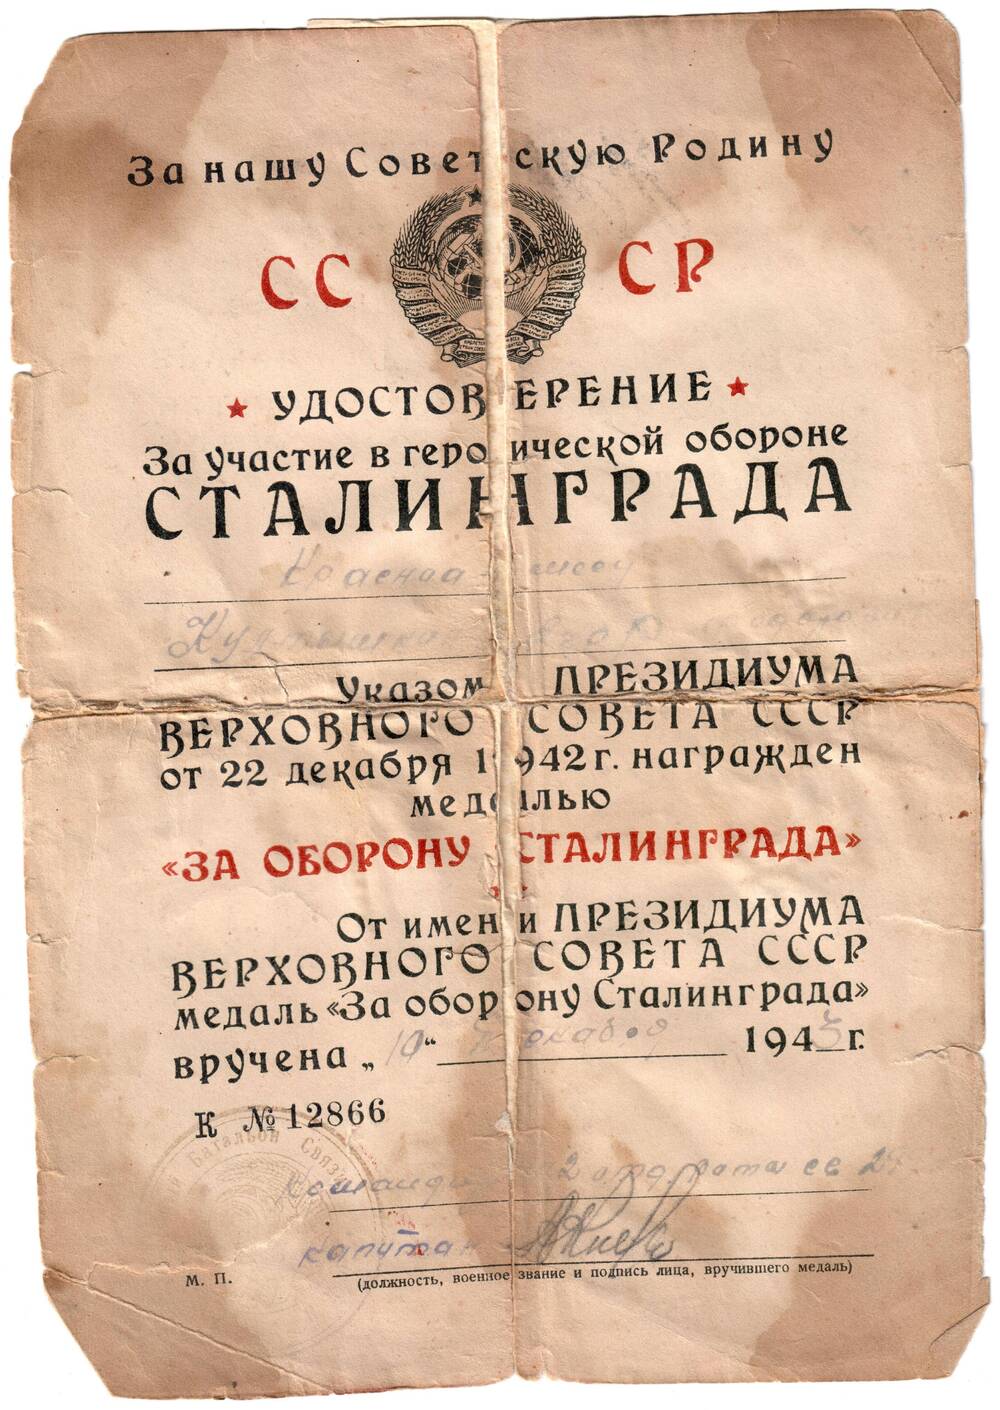 Удостоверение За участие в героической обороне Сталинграда от 10 декабря 1943 г., выдано Култышкину Е. Ф.